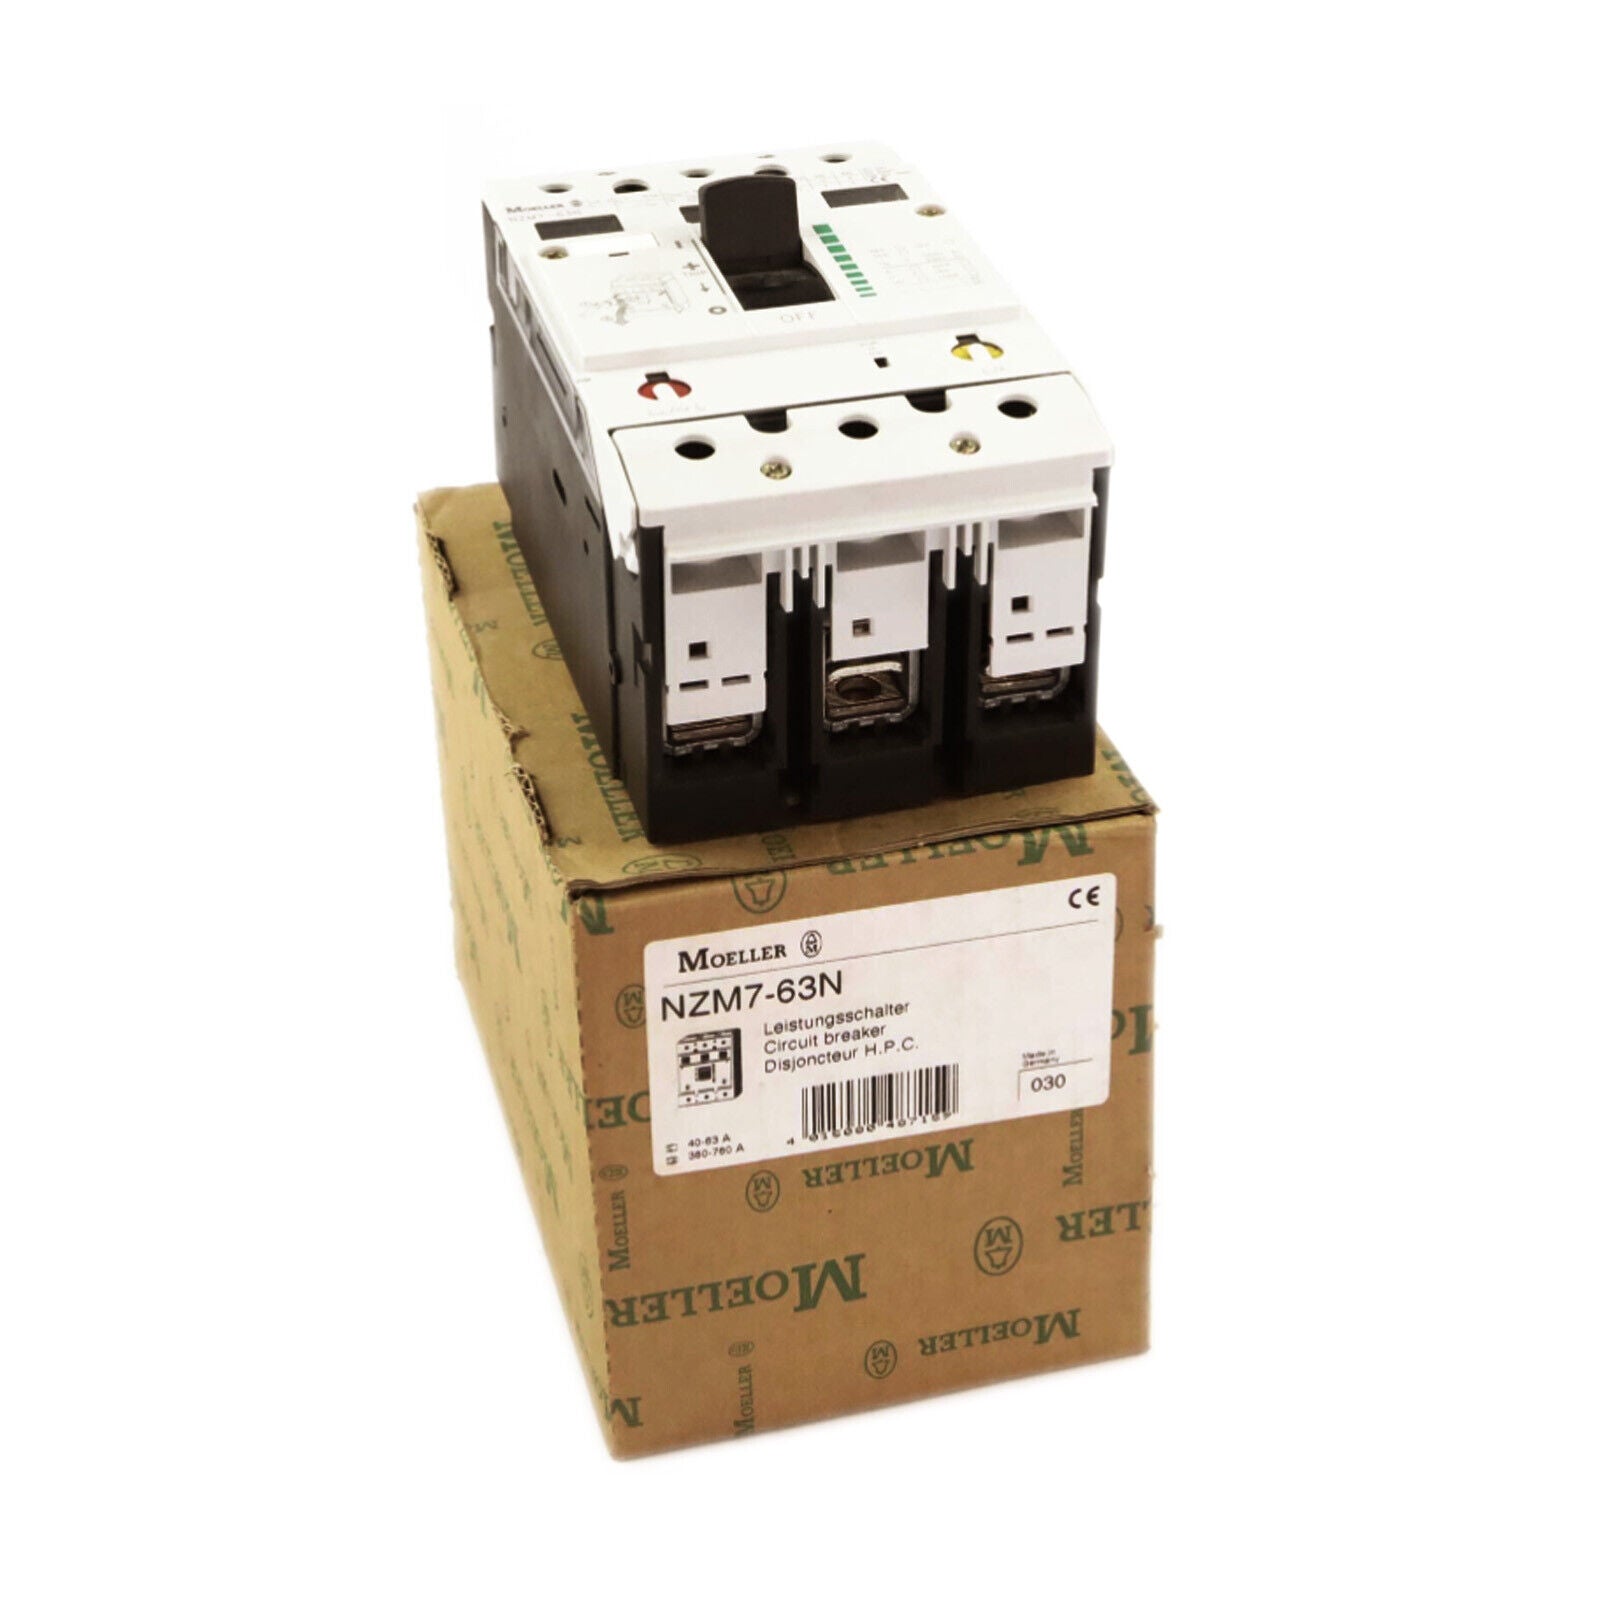 new 1pcs   Moeller NZM7-63N circuit breaker motor protection